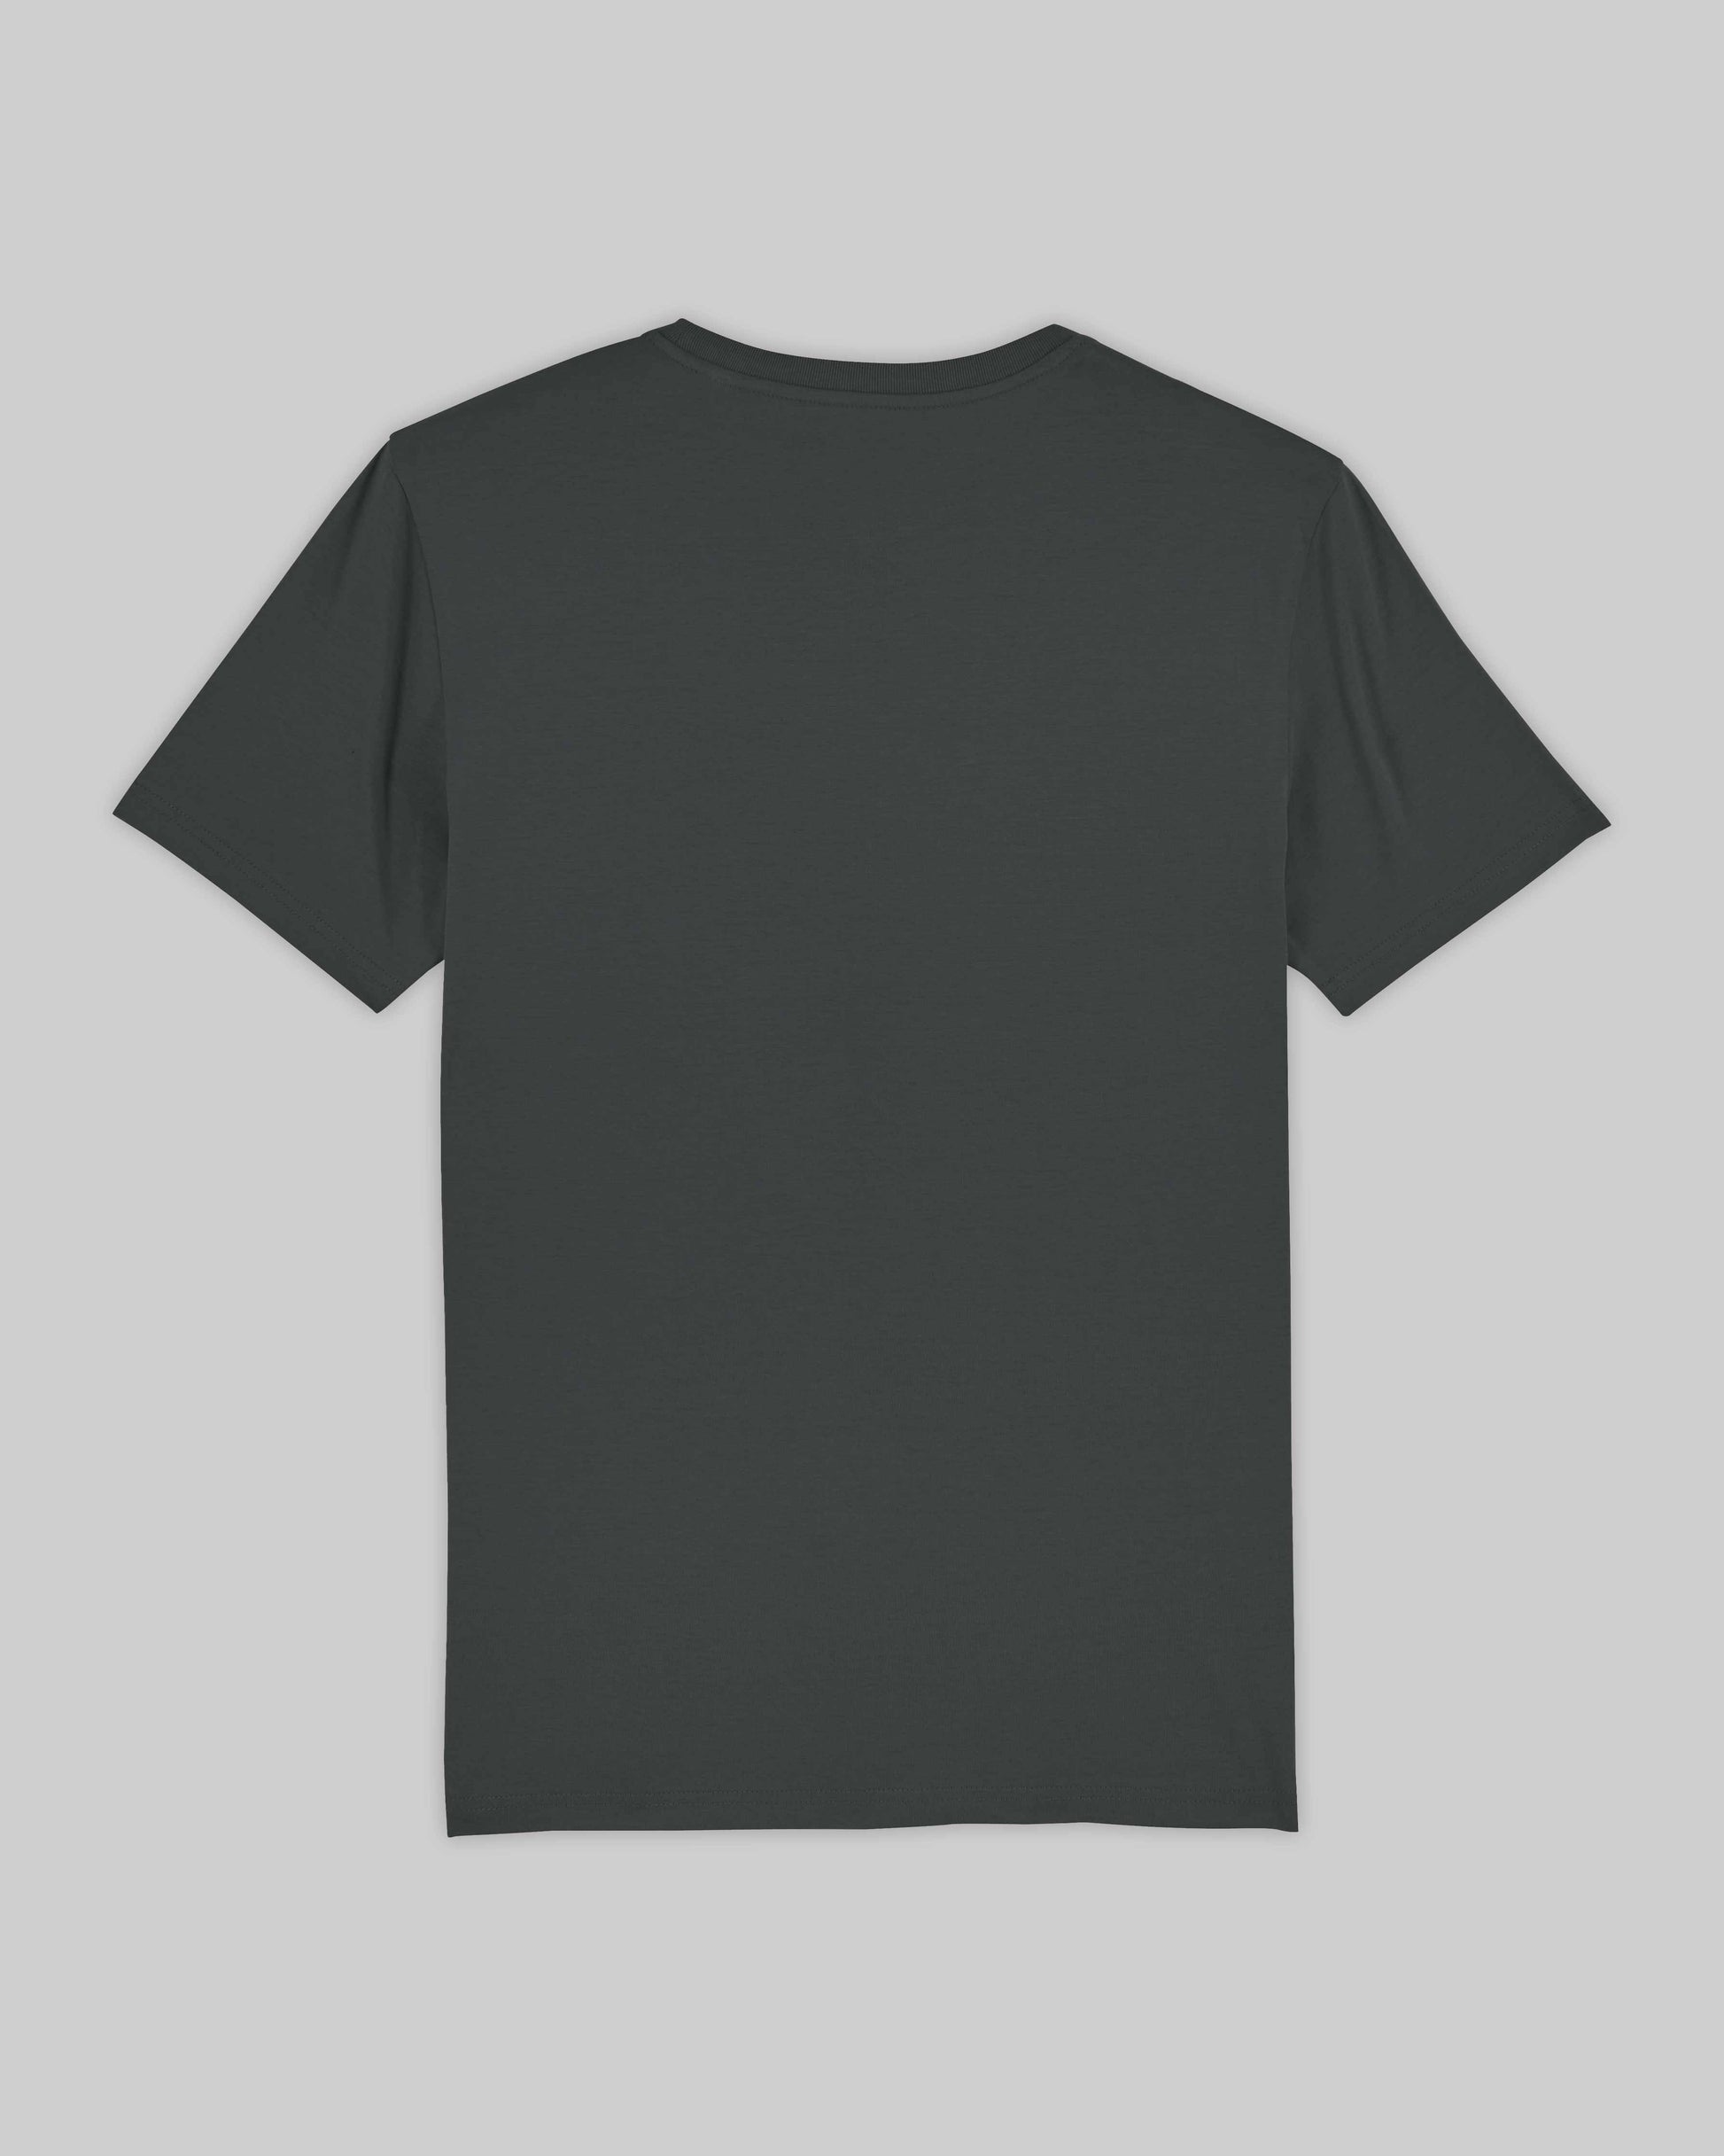 EINHORST® unisex Organic Shirt in "Anthracite" mit dem Motiv "s-ally Regenbogen" in der Kombination schwarzer Regenbogen mit schwarzer Schrift, Bild von Shirt von hinten